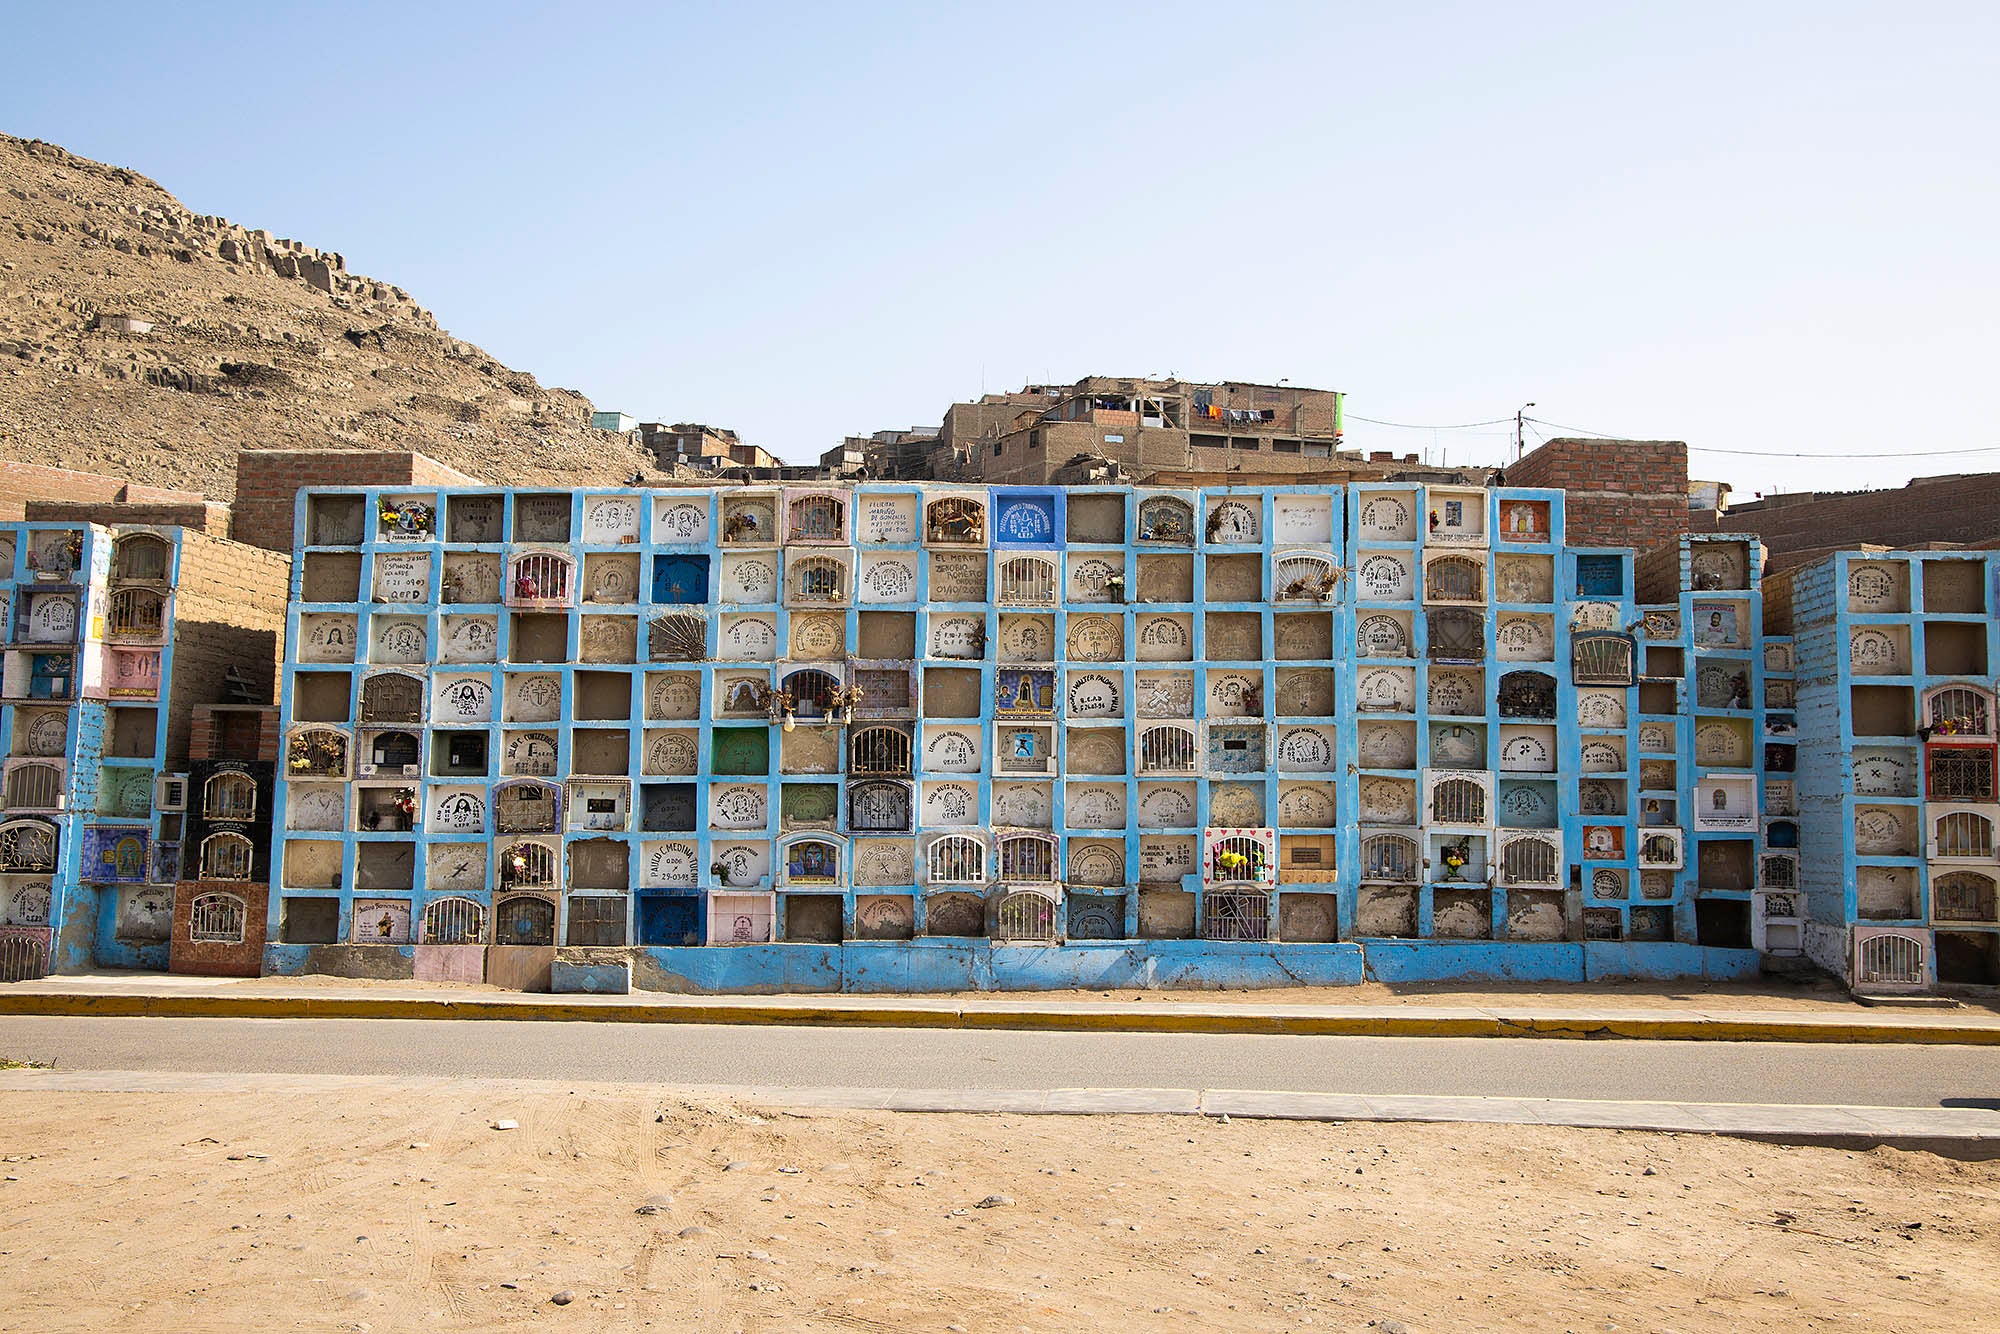 Photographie de casiers en pierre pris en photo au pérou devant des bidonvilles voyage inspiration misericordia lima amérique latine